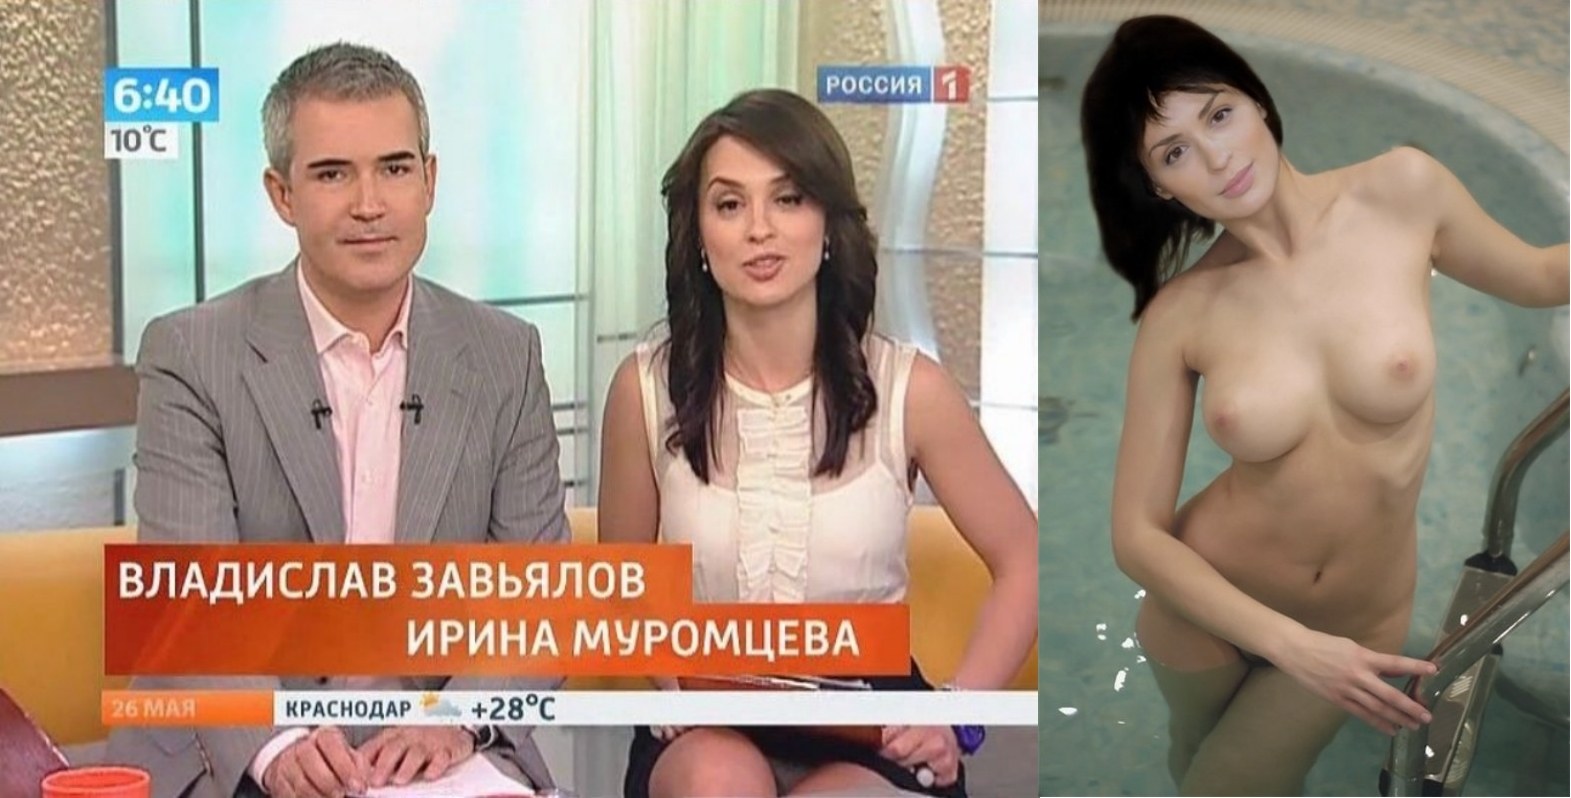 телеведущие российские эротика фото 28